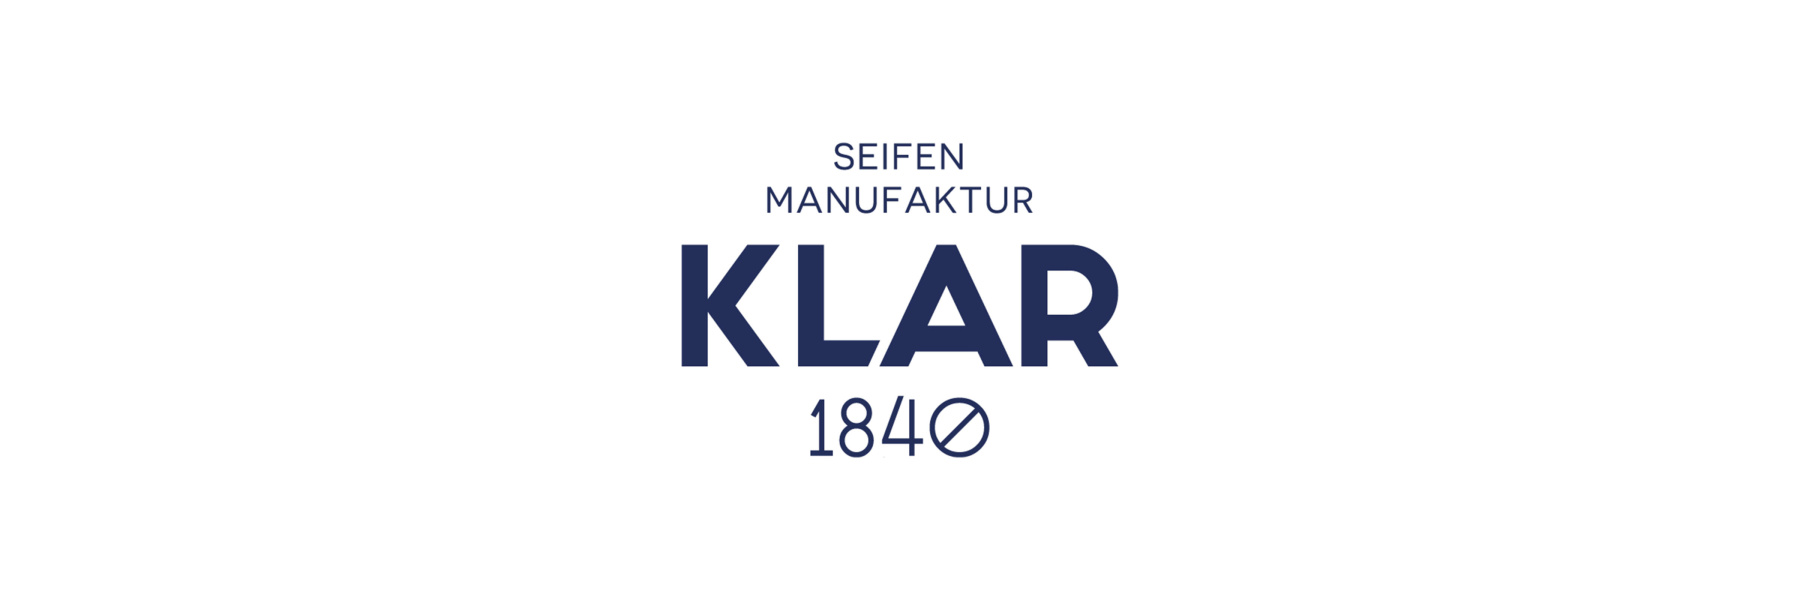 KLAR Seife, ein deutscher Hersteller mit einer...